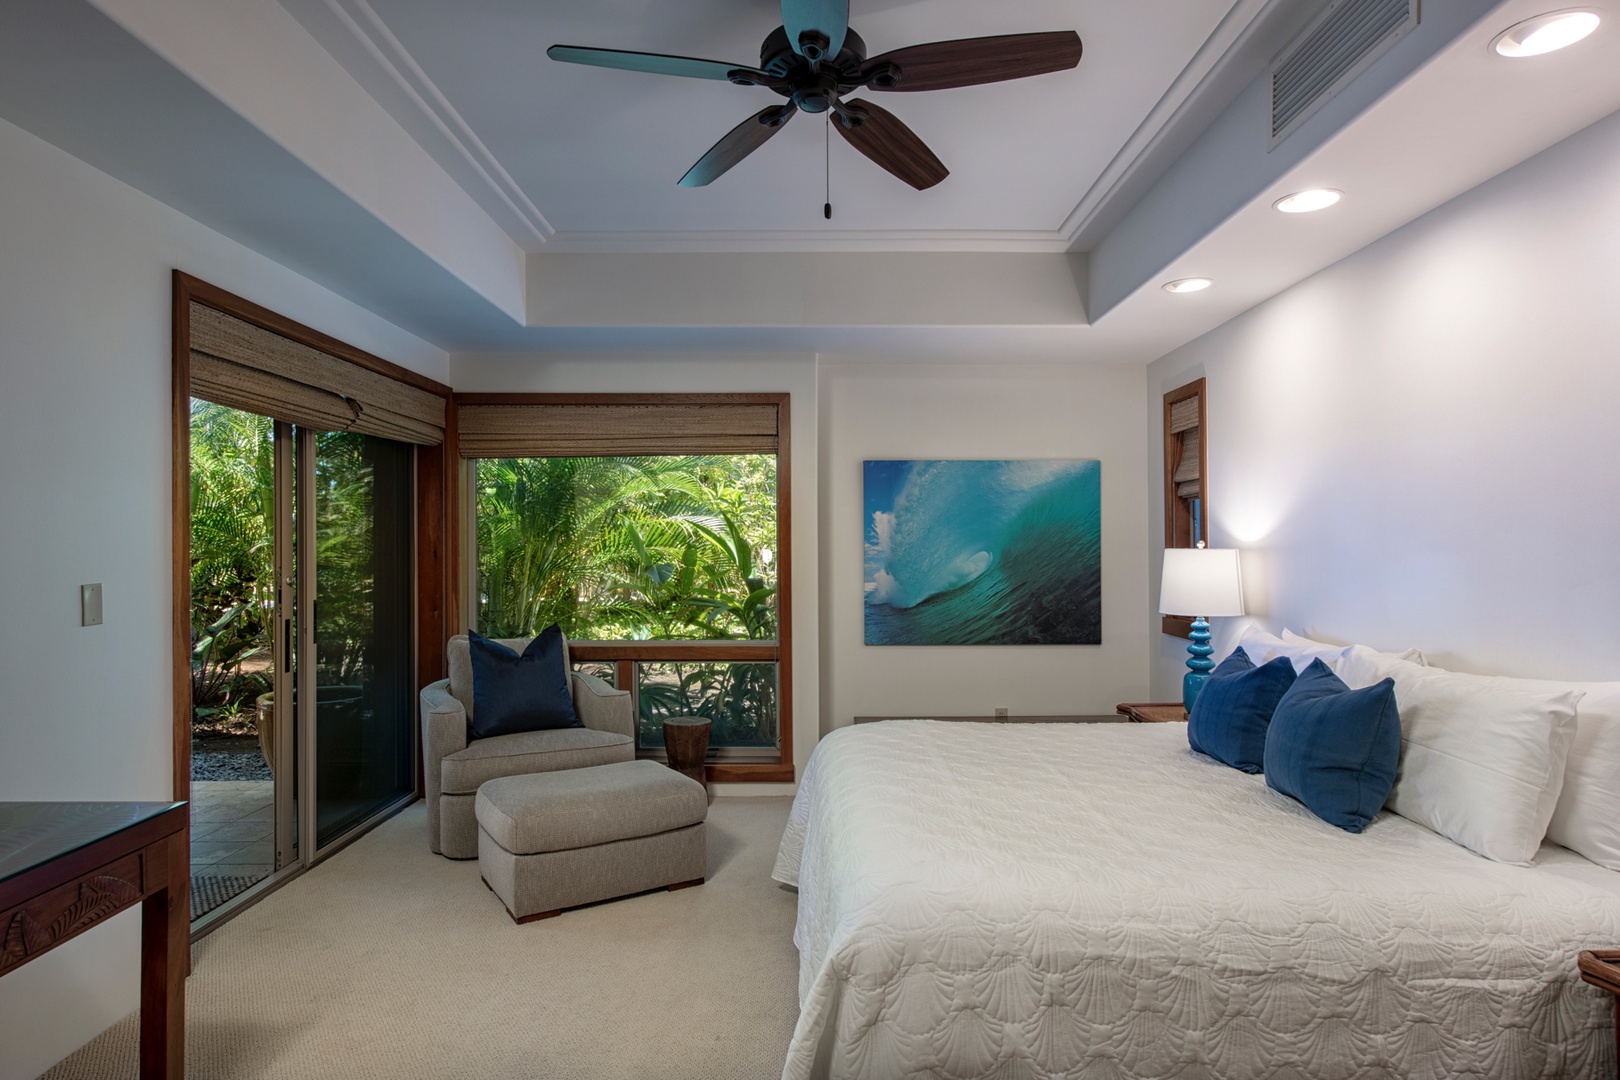 Kailua Kona Vacation Rentals, 3BD Golf Villa (3101) at Four Seasons Resort at Hualalai - Alternate view of second bedroom.